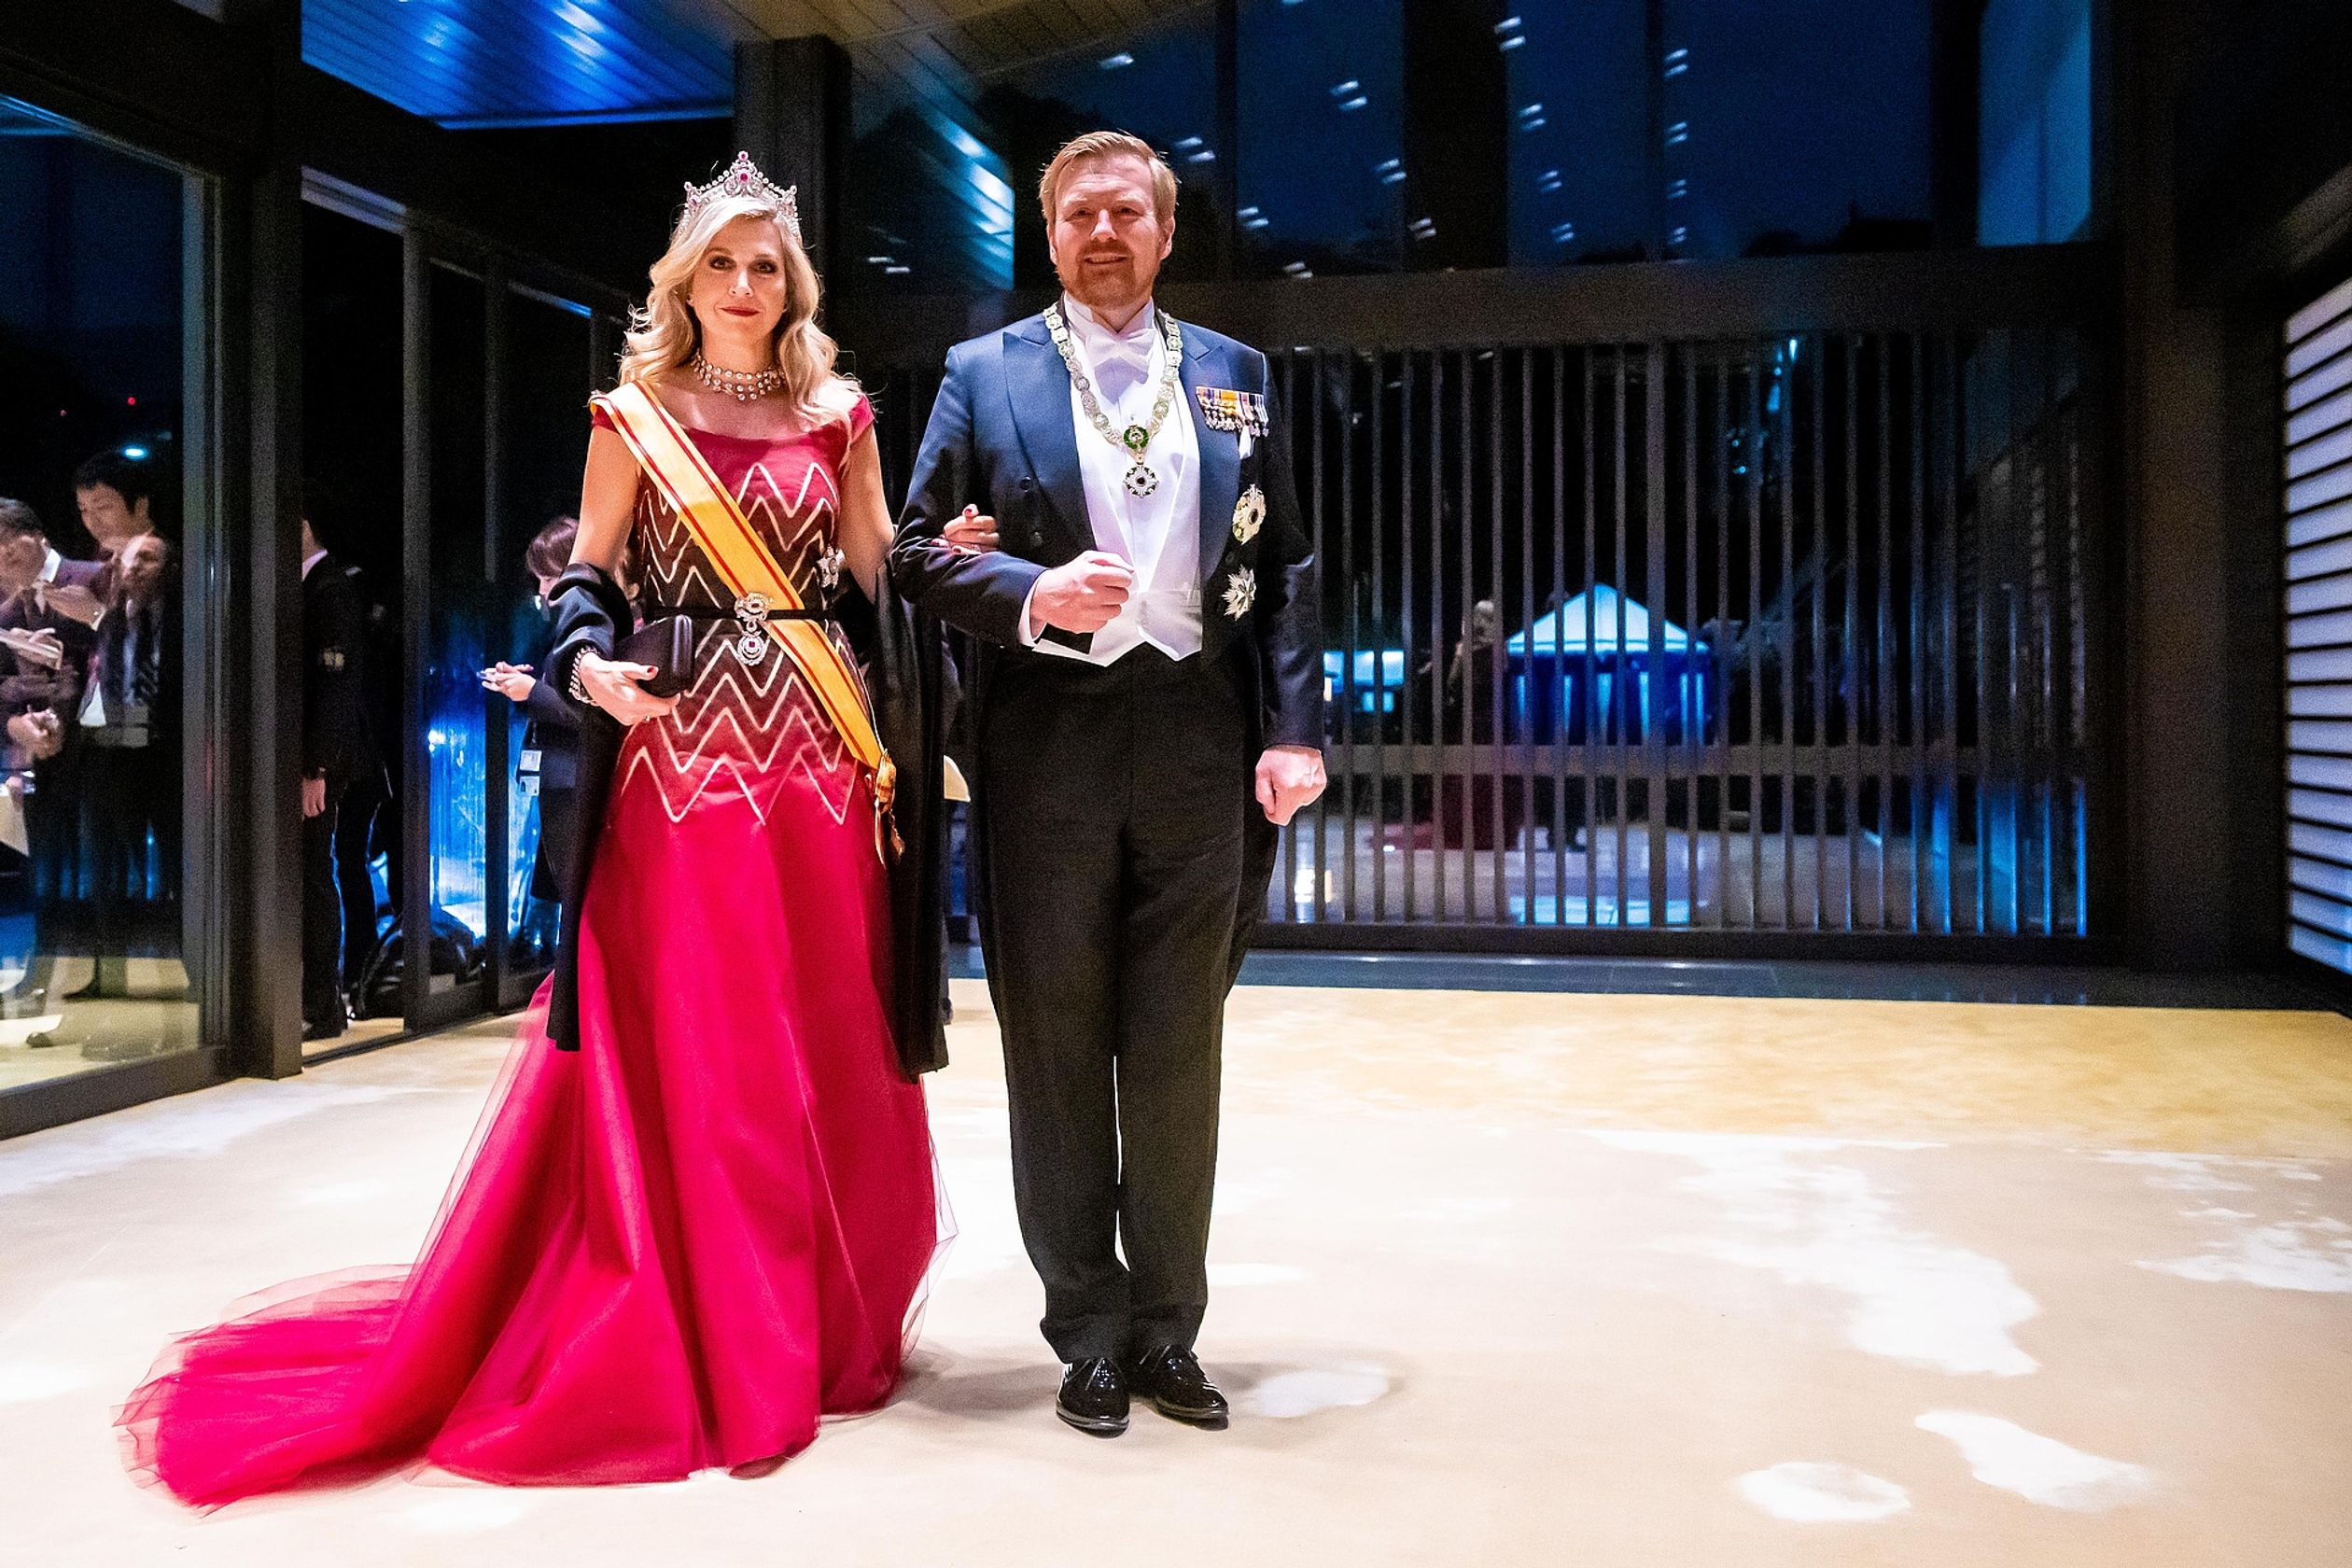 Koning Willem-Alexander en koningin Máxima bij aankomst voor het galadiner voor de inhuldiging van